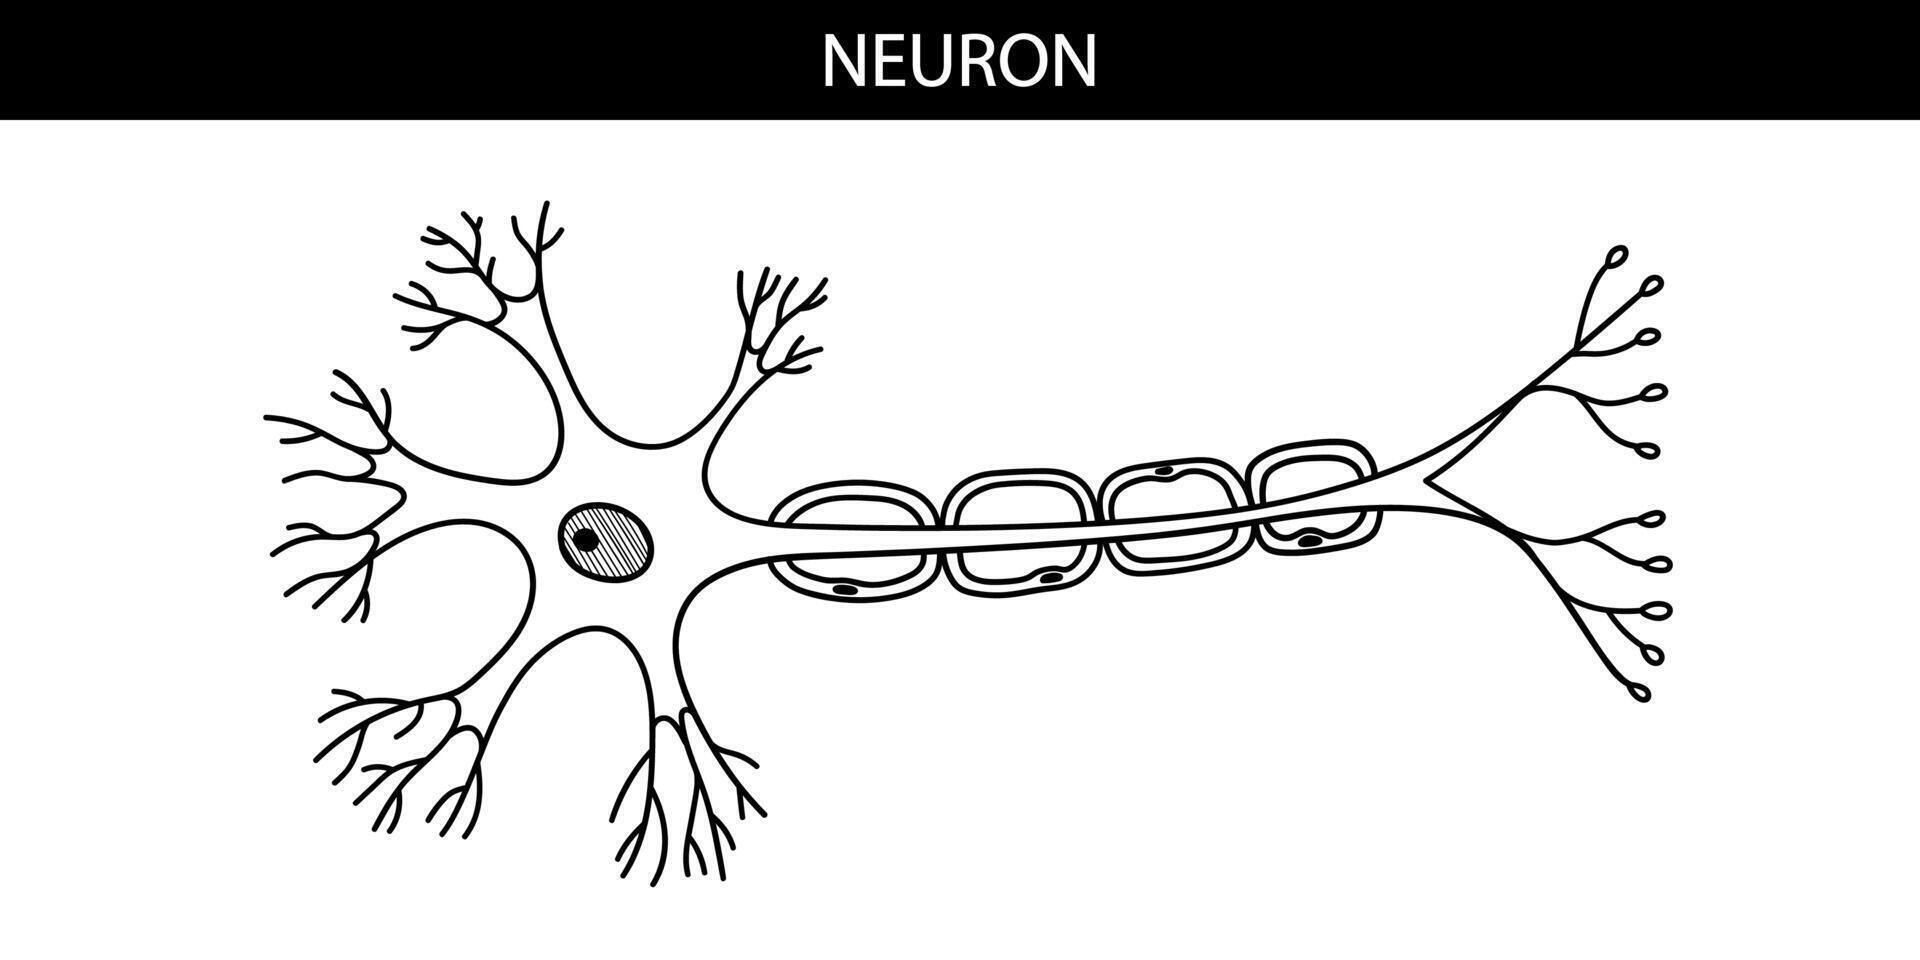 anatômico ilustração do uma neurônio dentro desenho animado estilo vetor